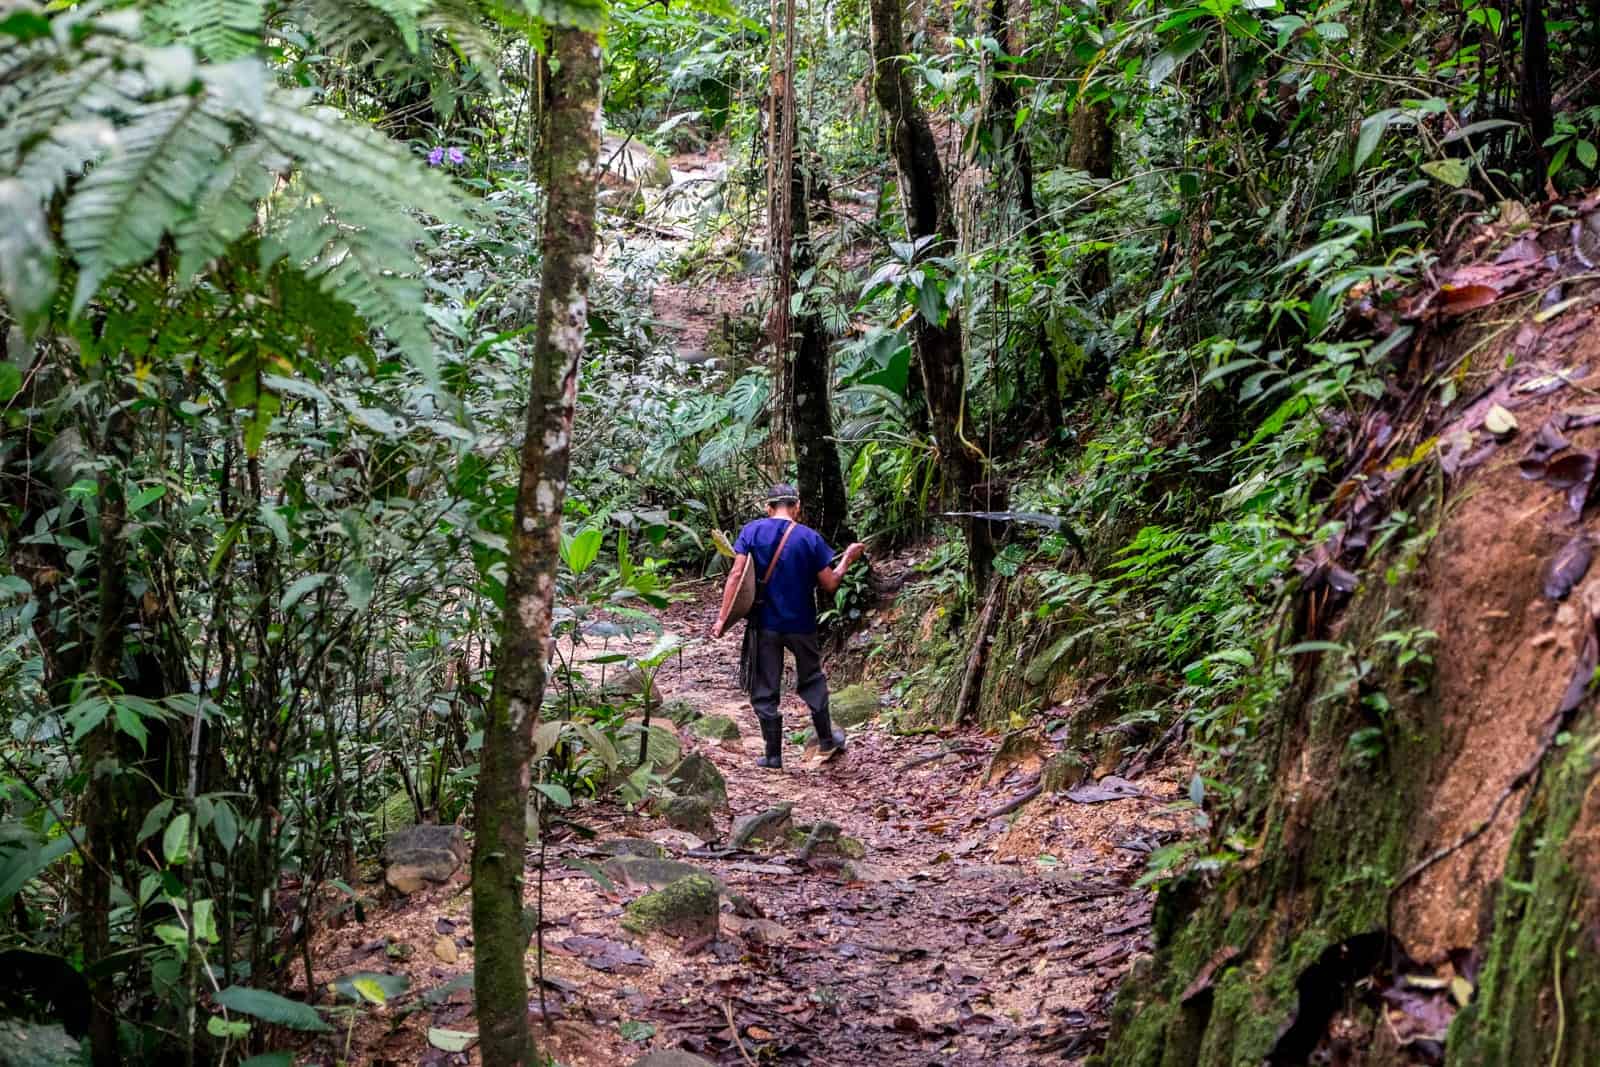 A man trekking on a muddy path through the dense Ecuador Amazon jungle.